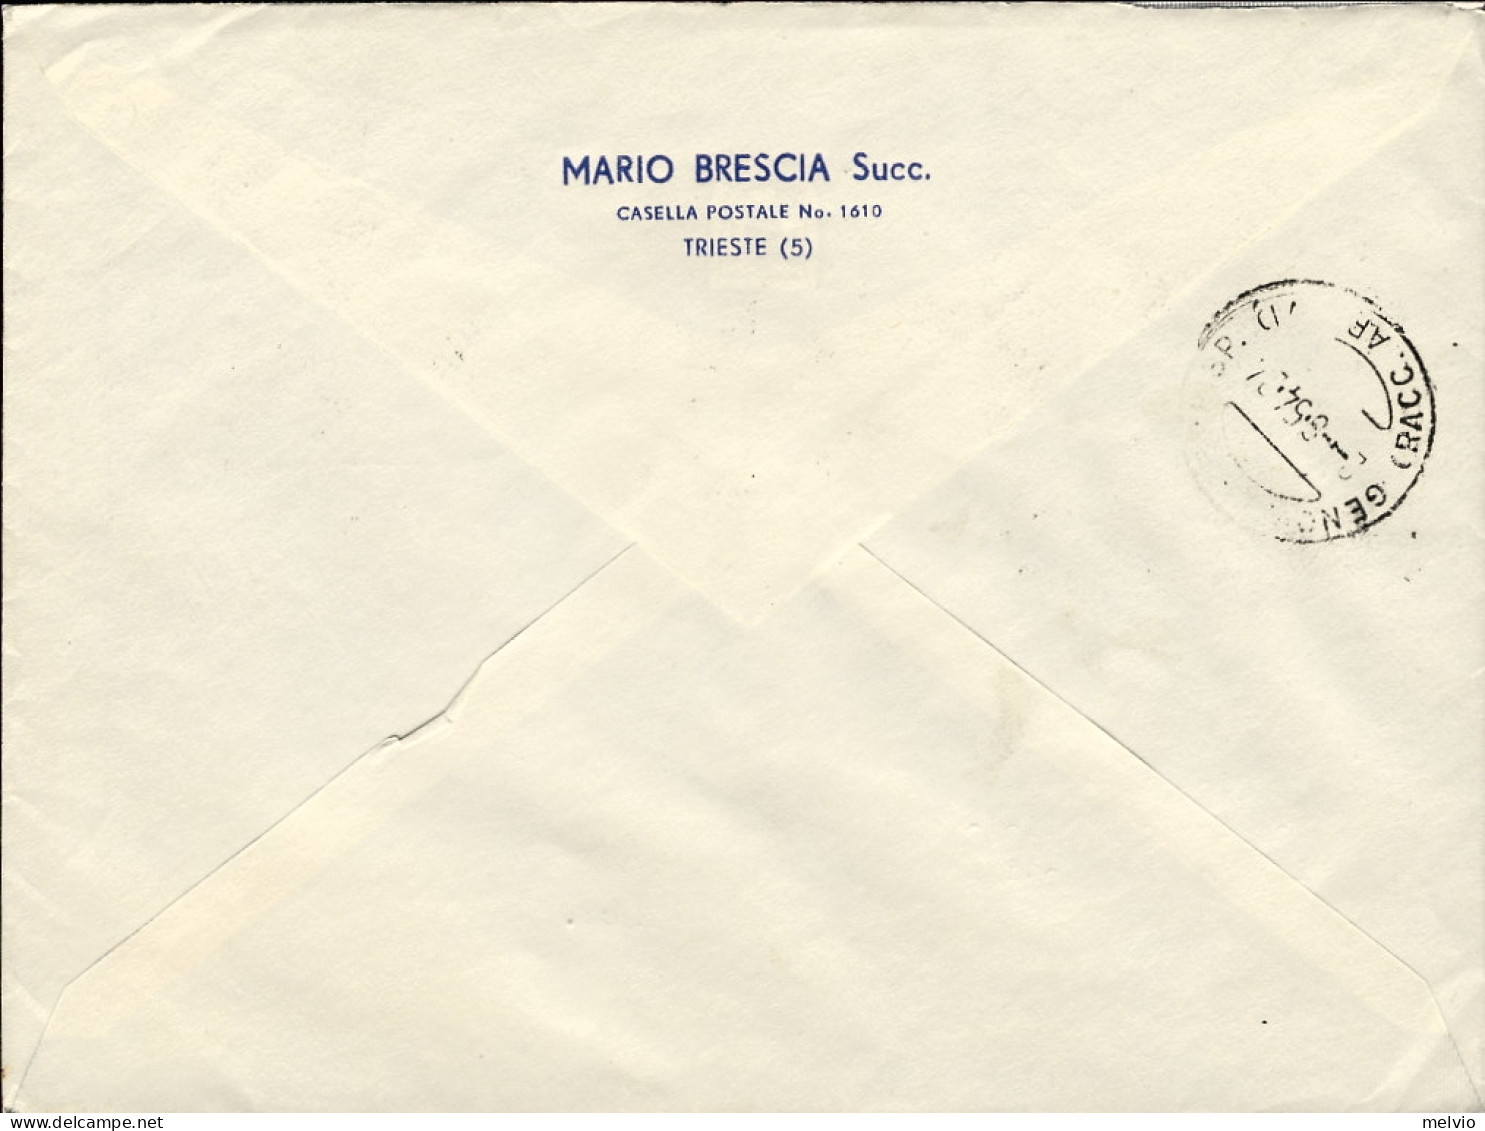 1954-Trieste A Racc. In Perfetta Tariffa L.105 Affr. Due Coppie L.25 Decennale R - Storia Postale